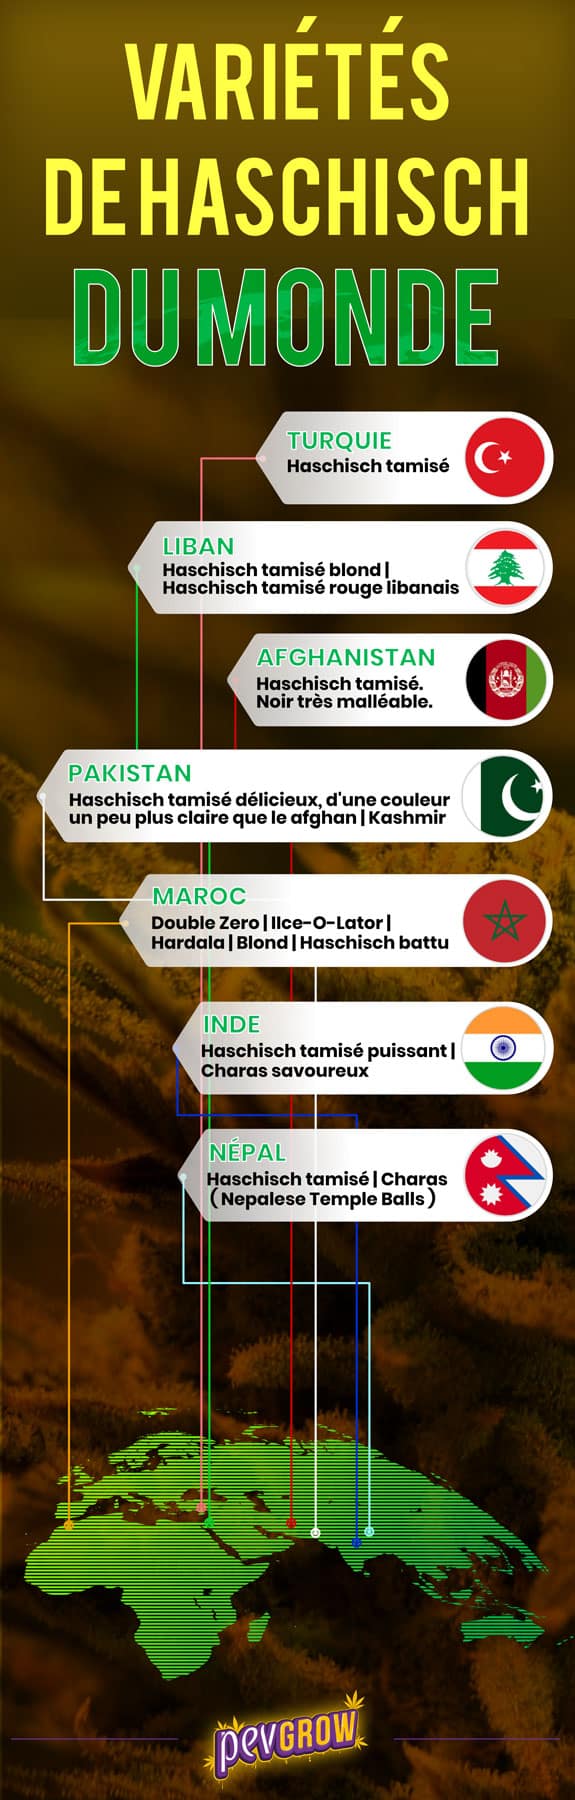 Infographie sur les variétés de haschisch dans le monde.